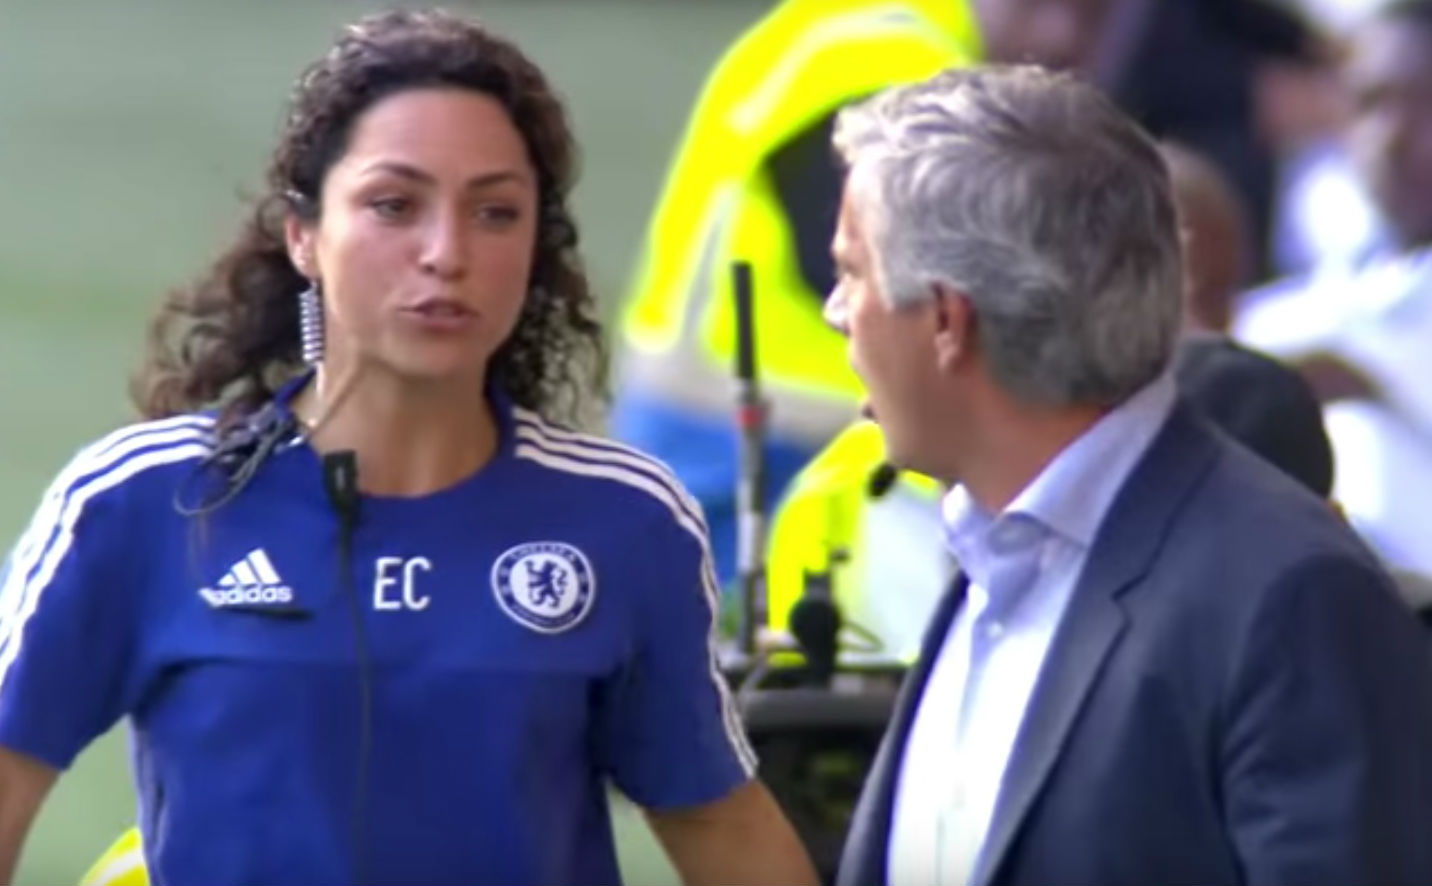 Novo vídeo revela insultos de Mourinho contra Eva Carneiro